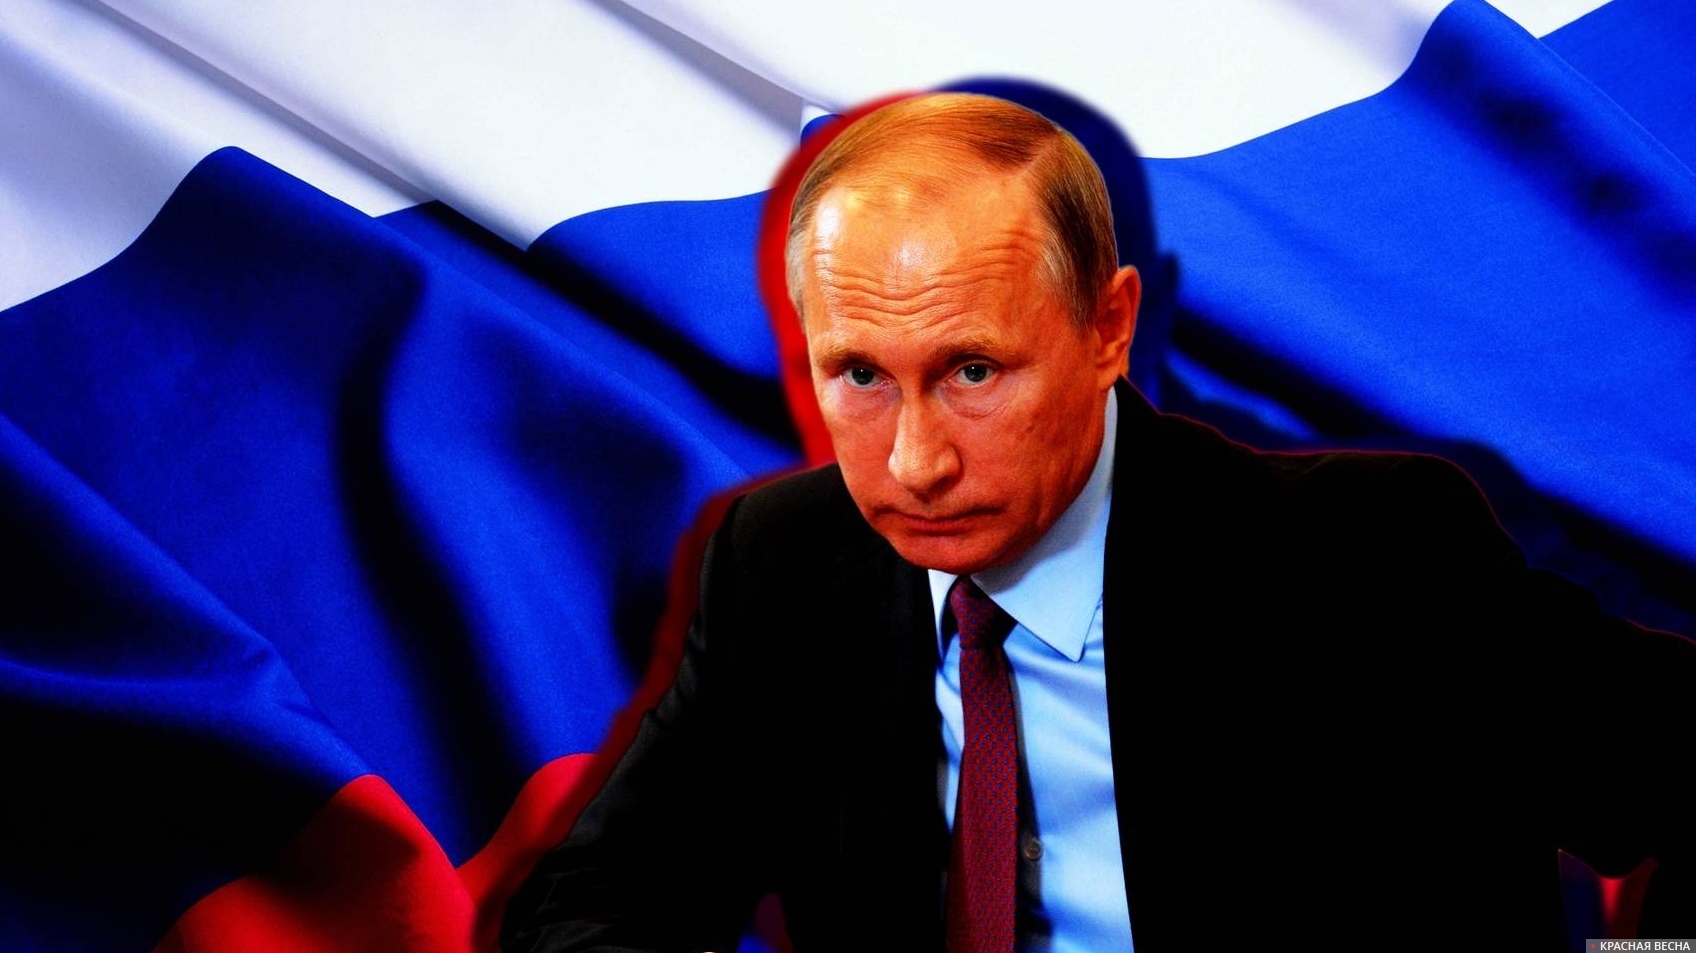 Главы силовых ведомств доложили Путину о ходе расследования теракта в «Крокусе»